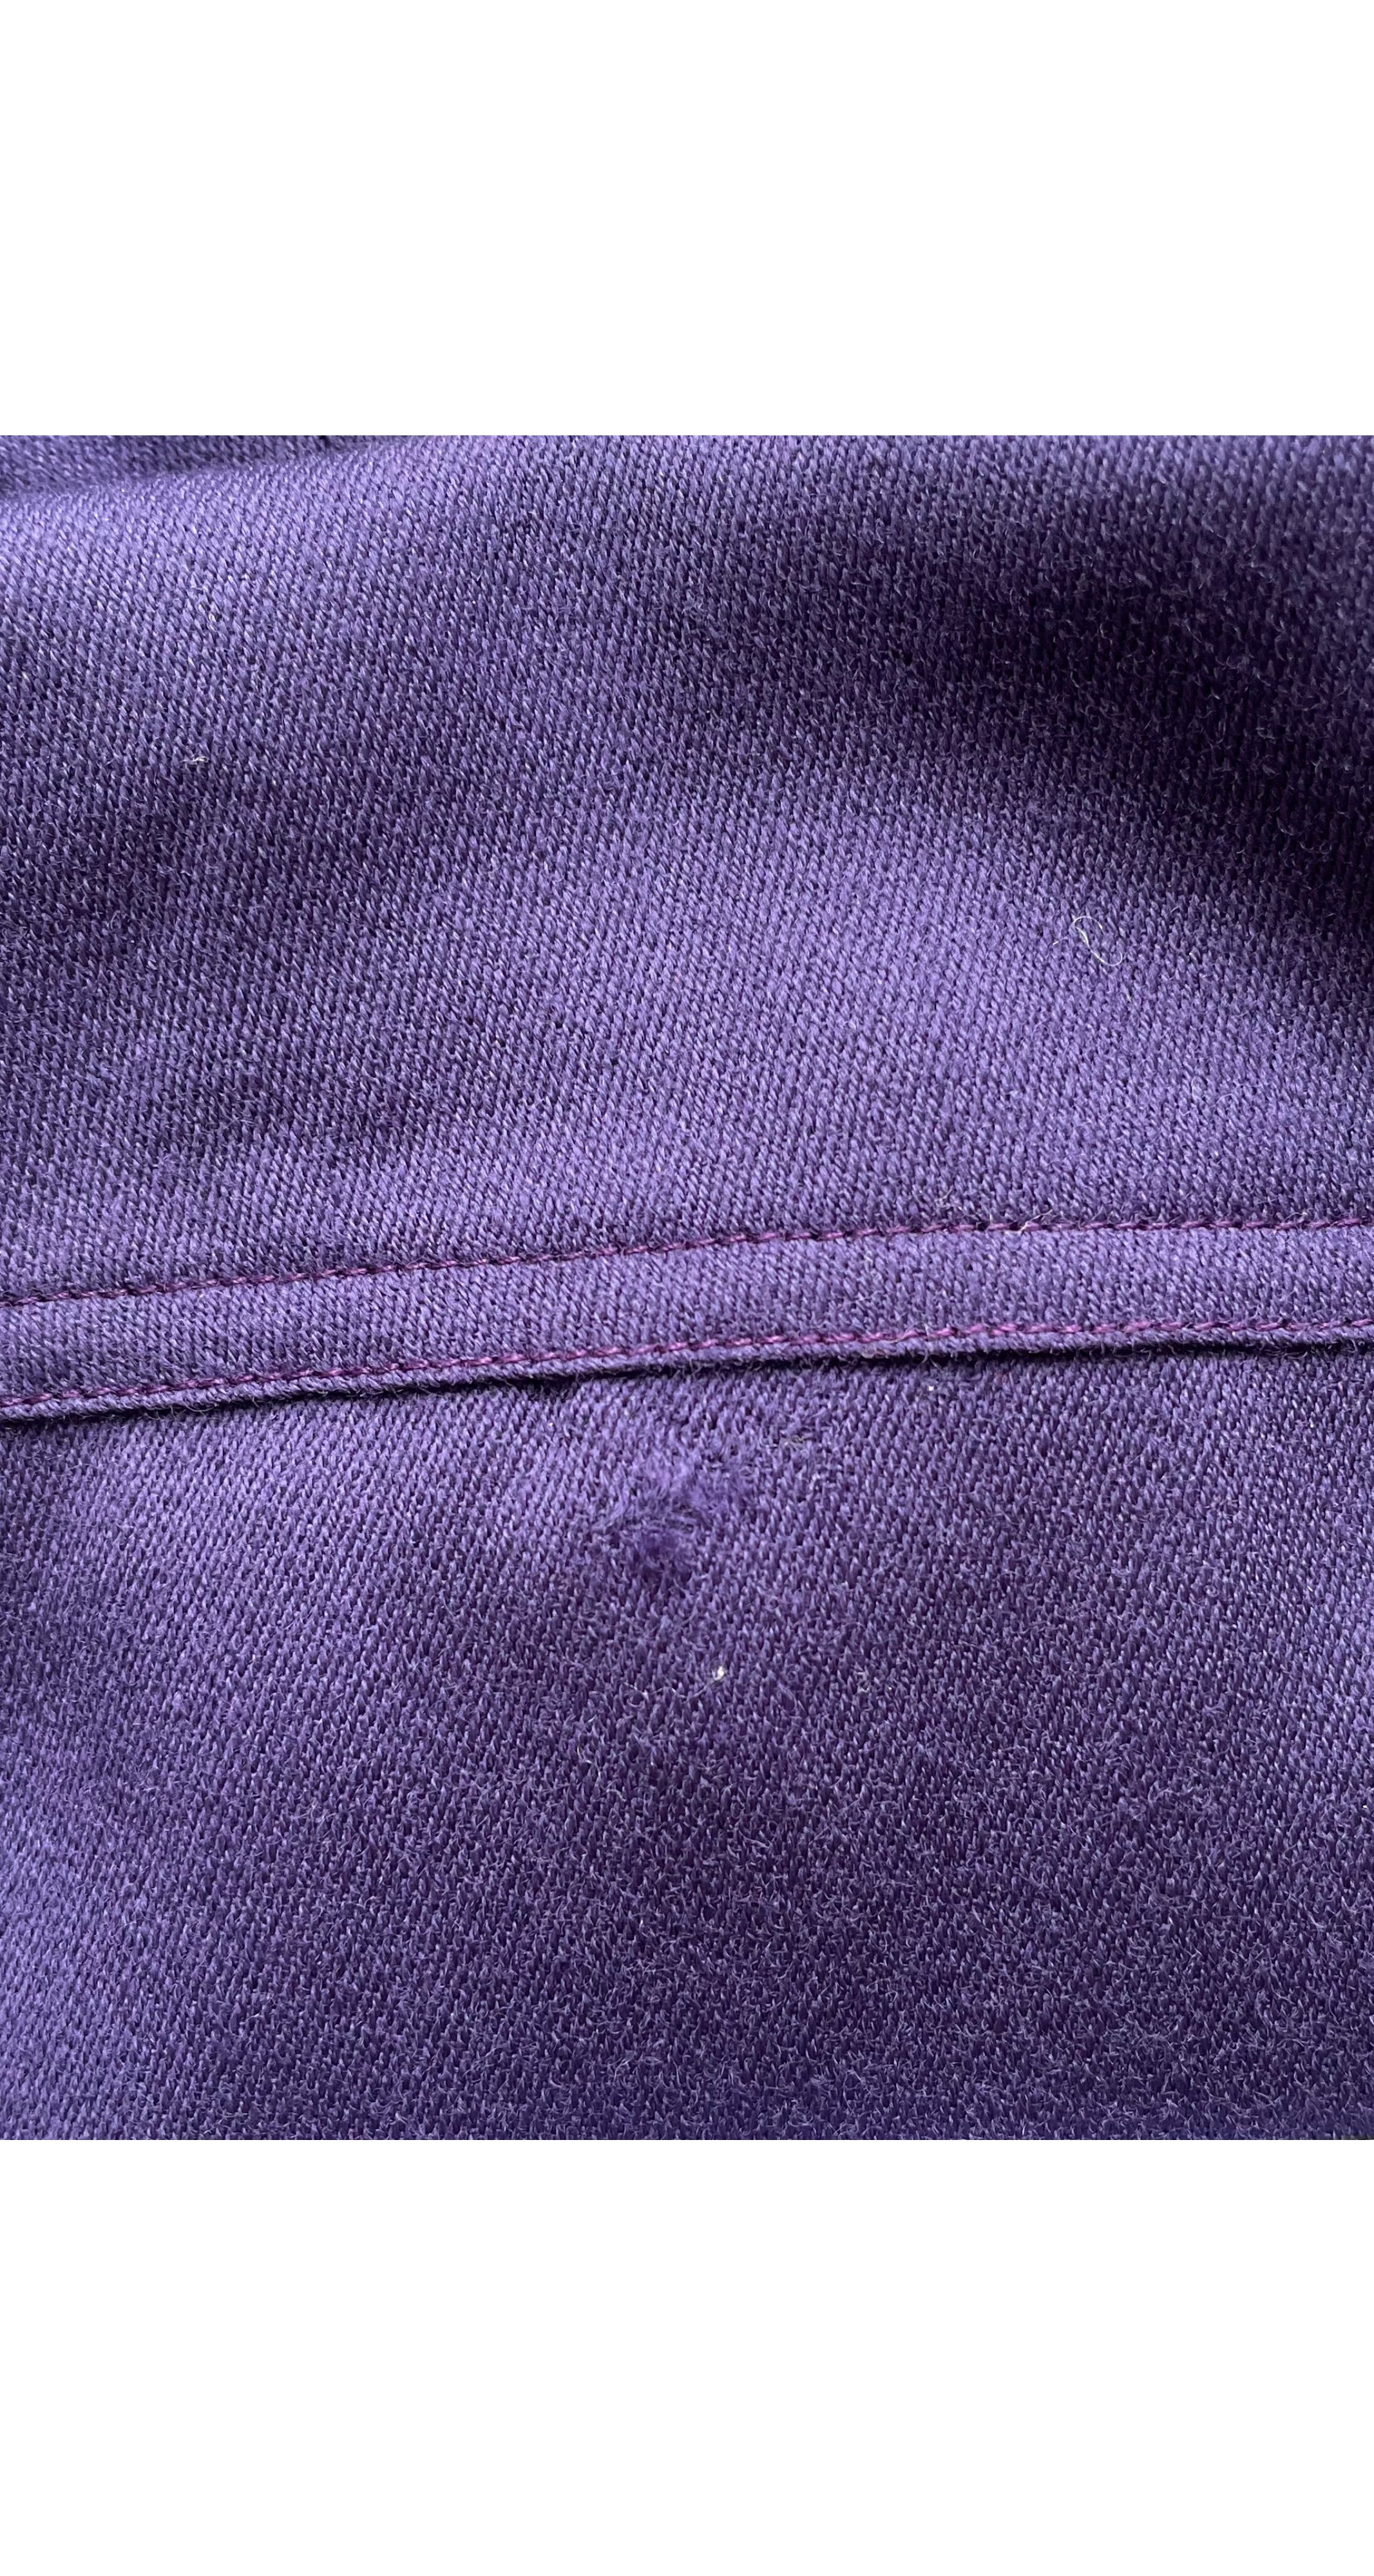 1980s Purple Wool Jacket & Trouser Suit